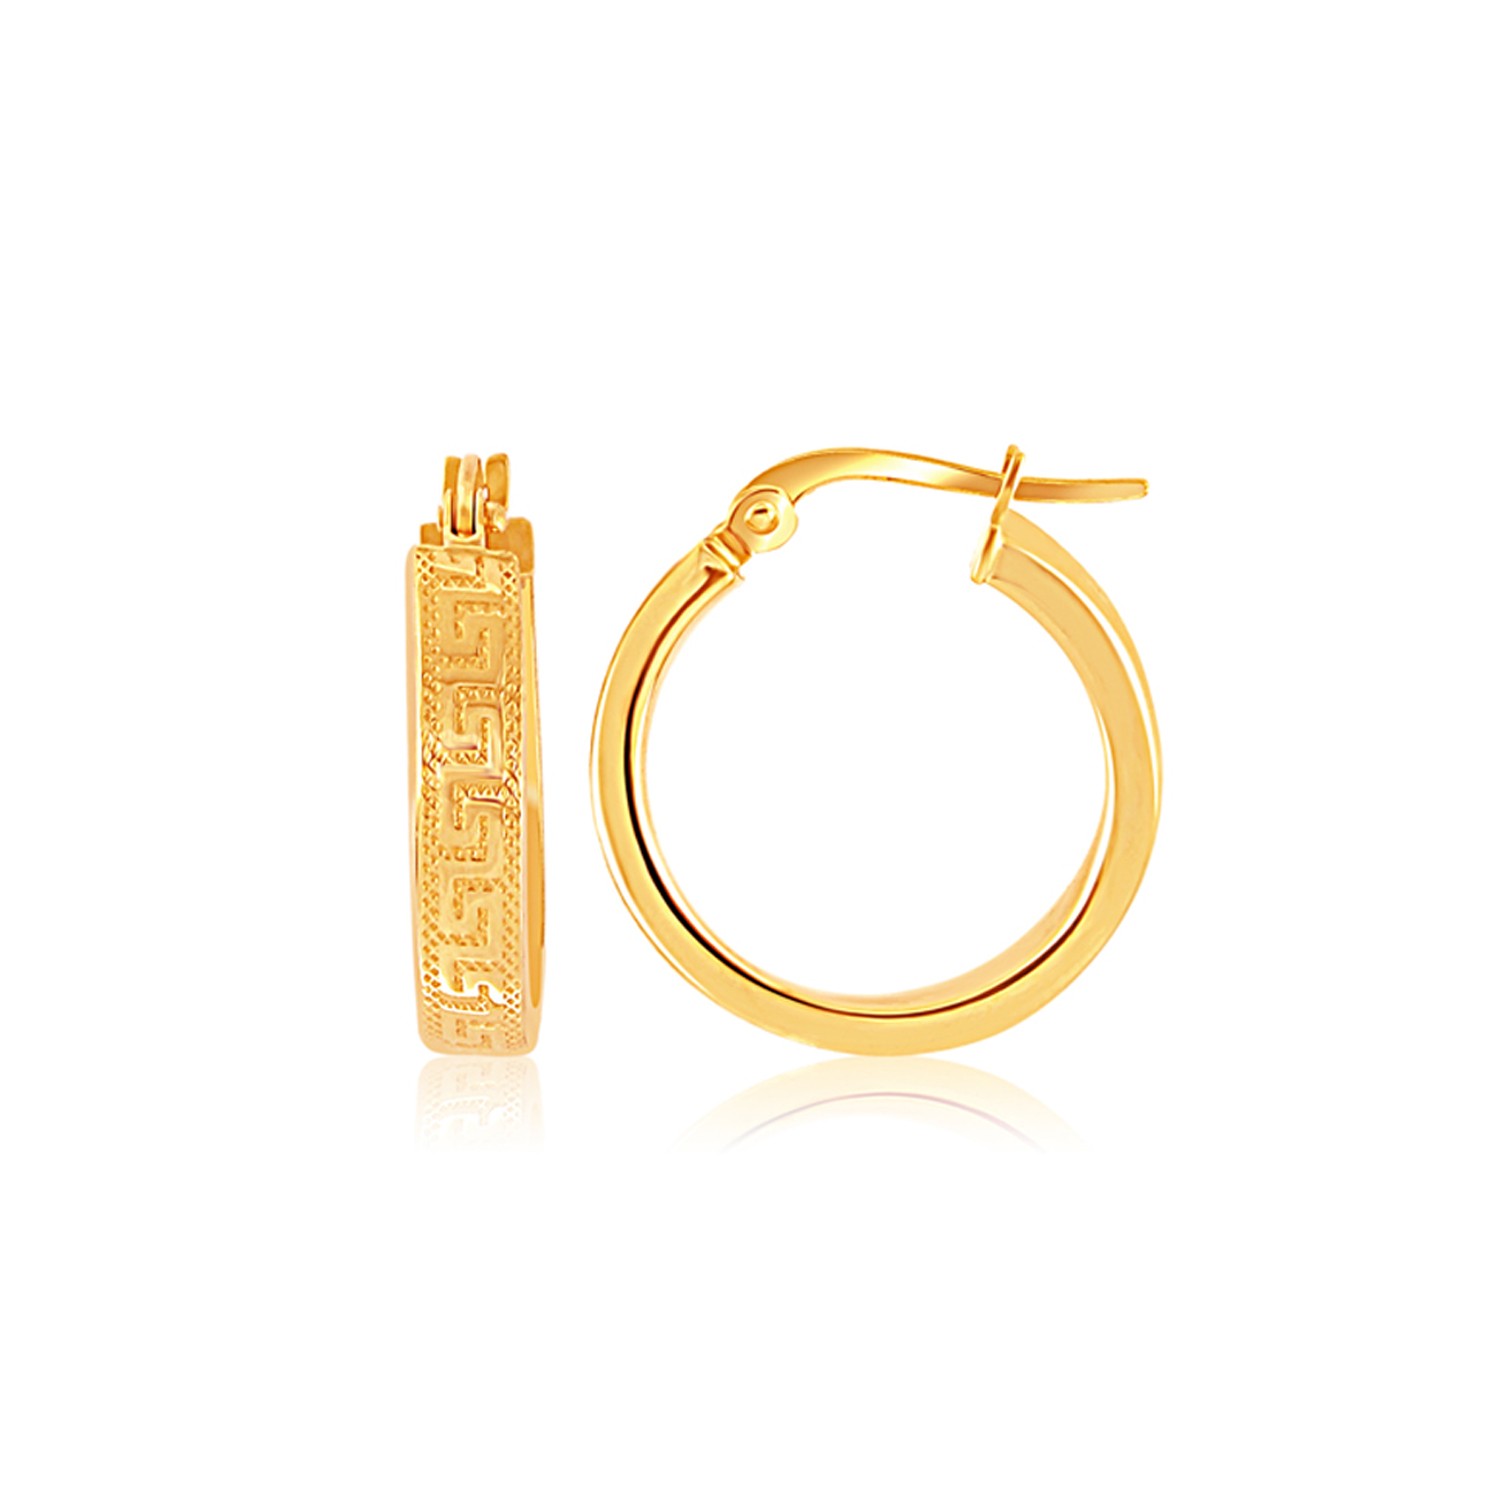 Greek Key Small Hoop Earrings in 14K Yellow Gold - Richard Cannon Jewelry